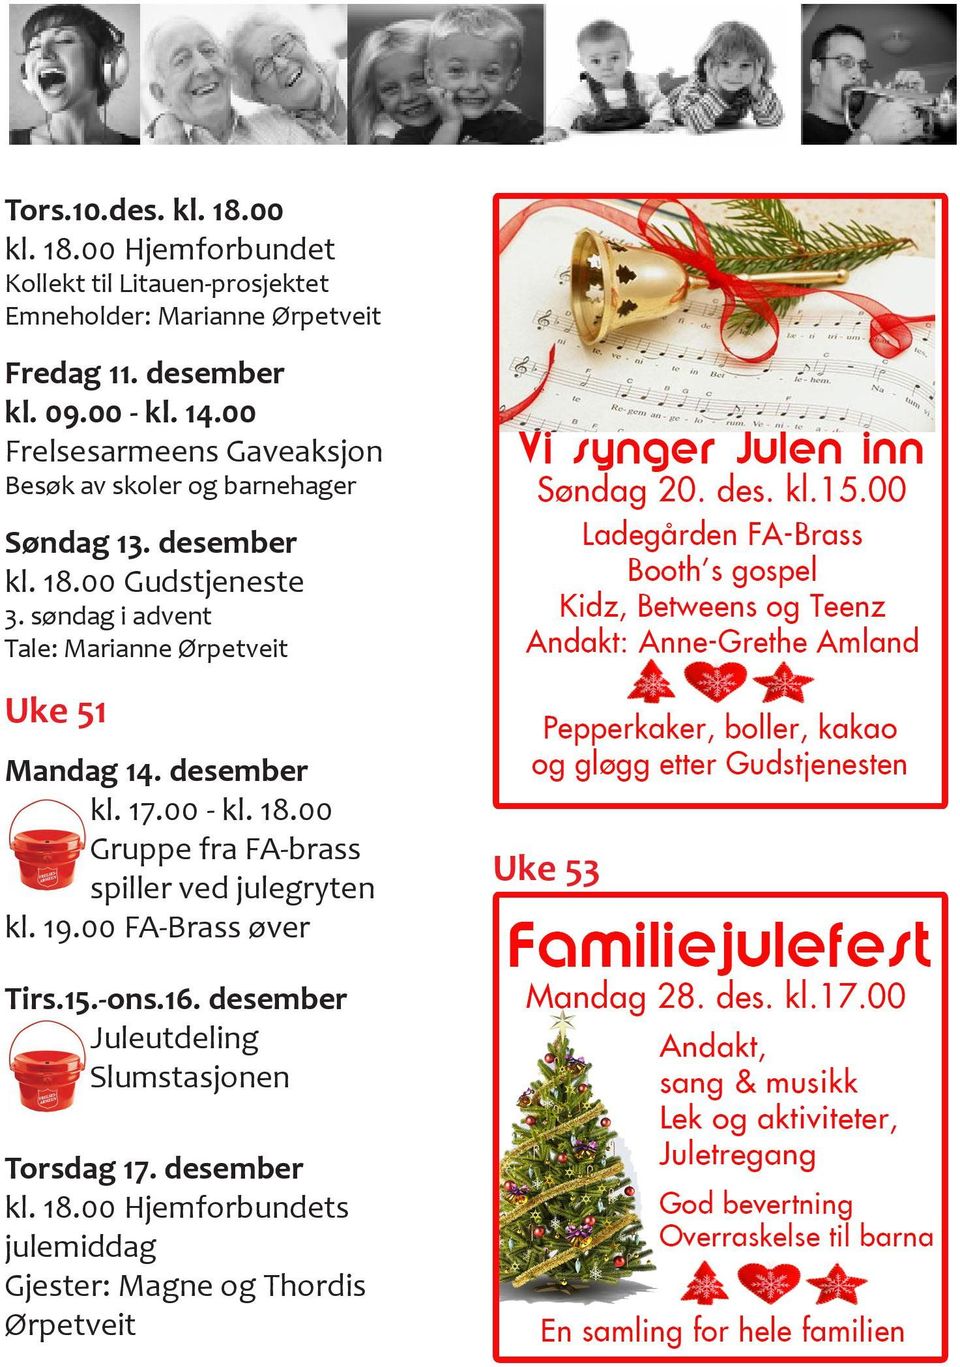 søndag i advent Tale: Marianne Ørpetveit Uke 51 Mandag 14. desember kl. 17.00 - kl. 18.00 Gruppe fra FA-brass spiller ved julegryten kl. 19.